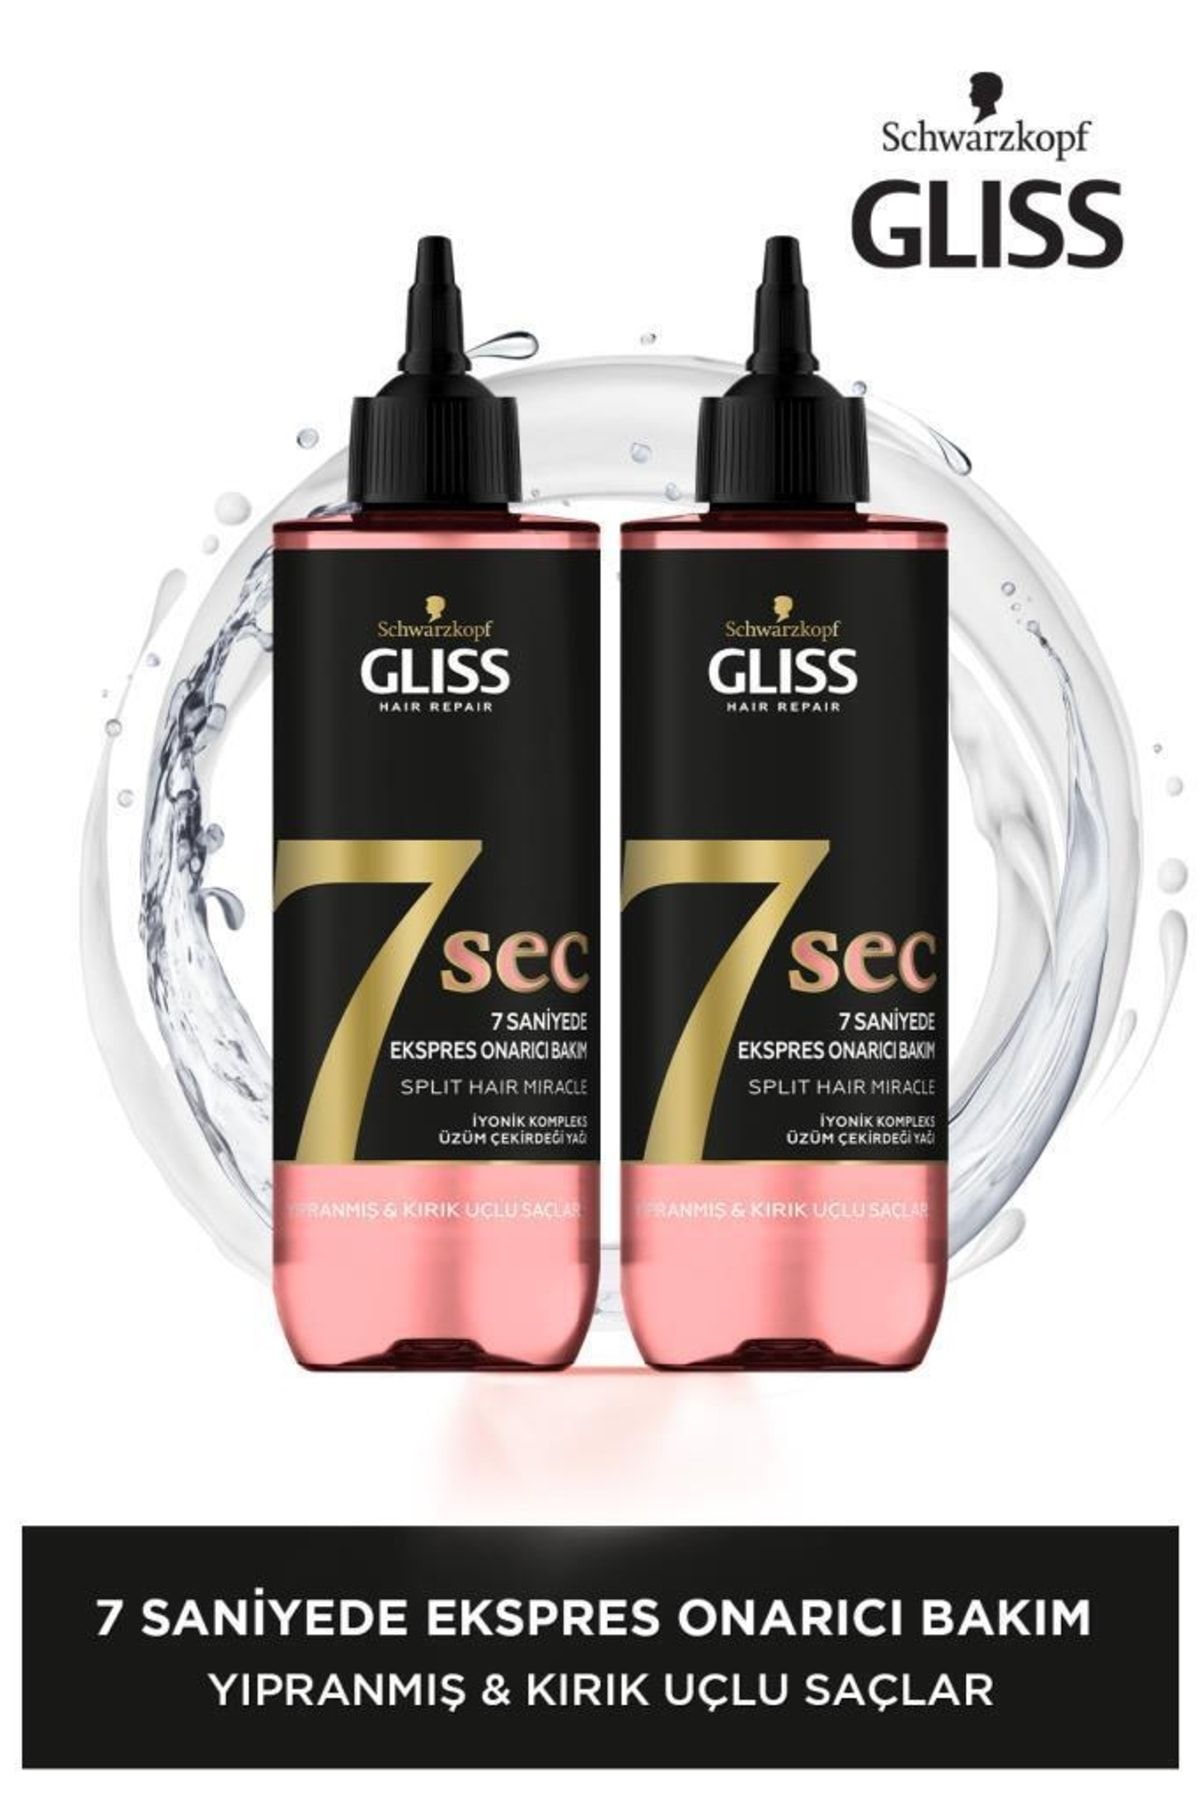 Gliss 7 Saniyede Express Kırık Saçları Onarıcı Sıvı Krem - 7 Sec Split Hair Miracle X 2